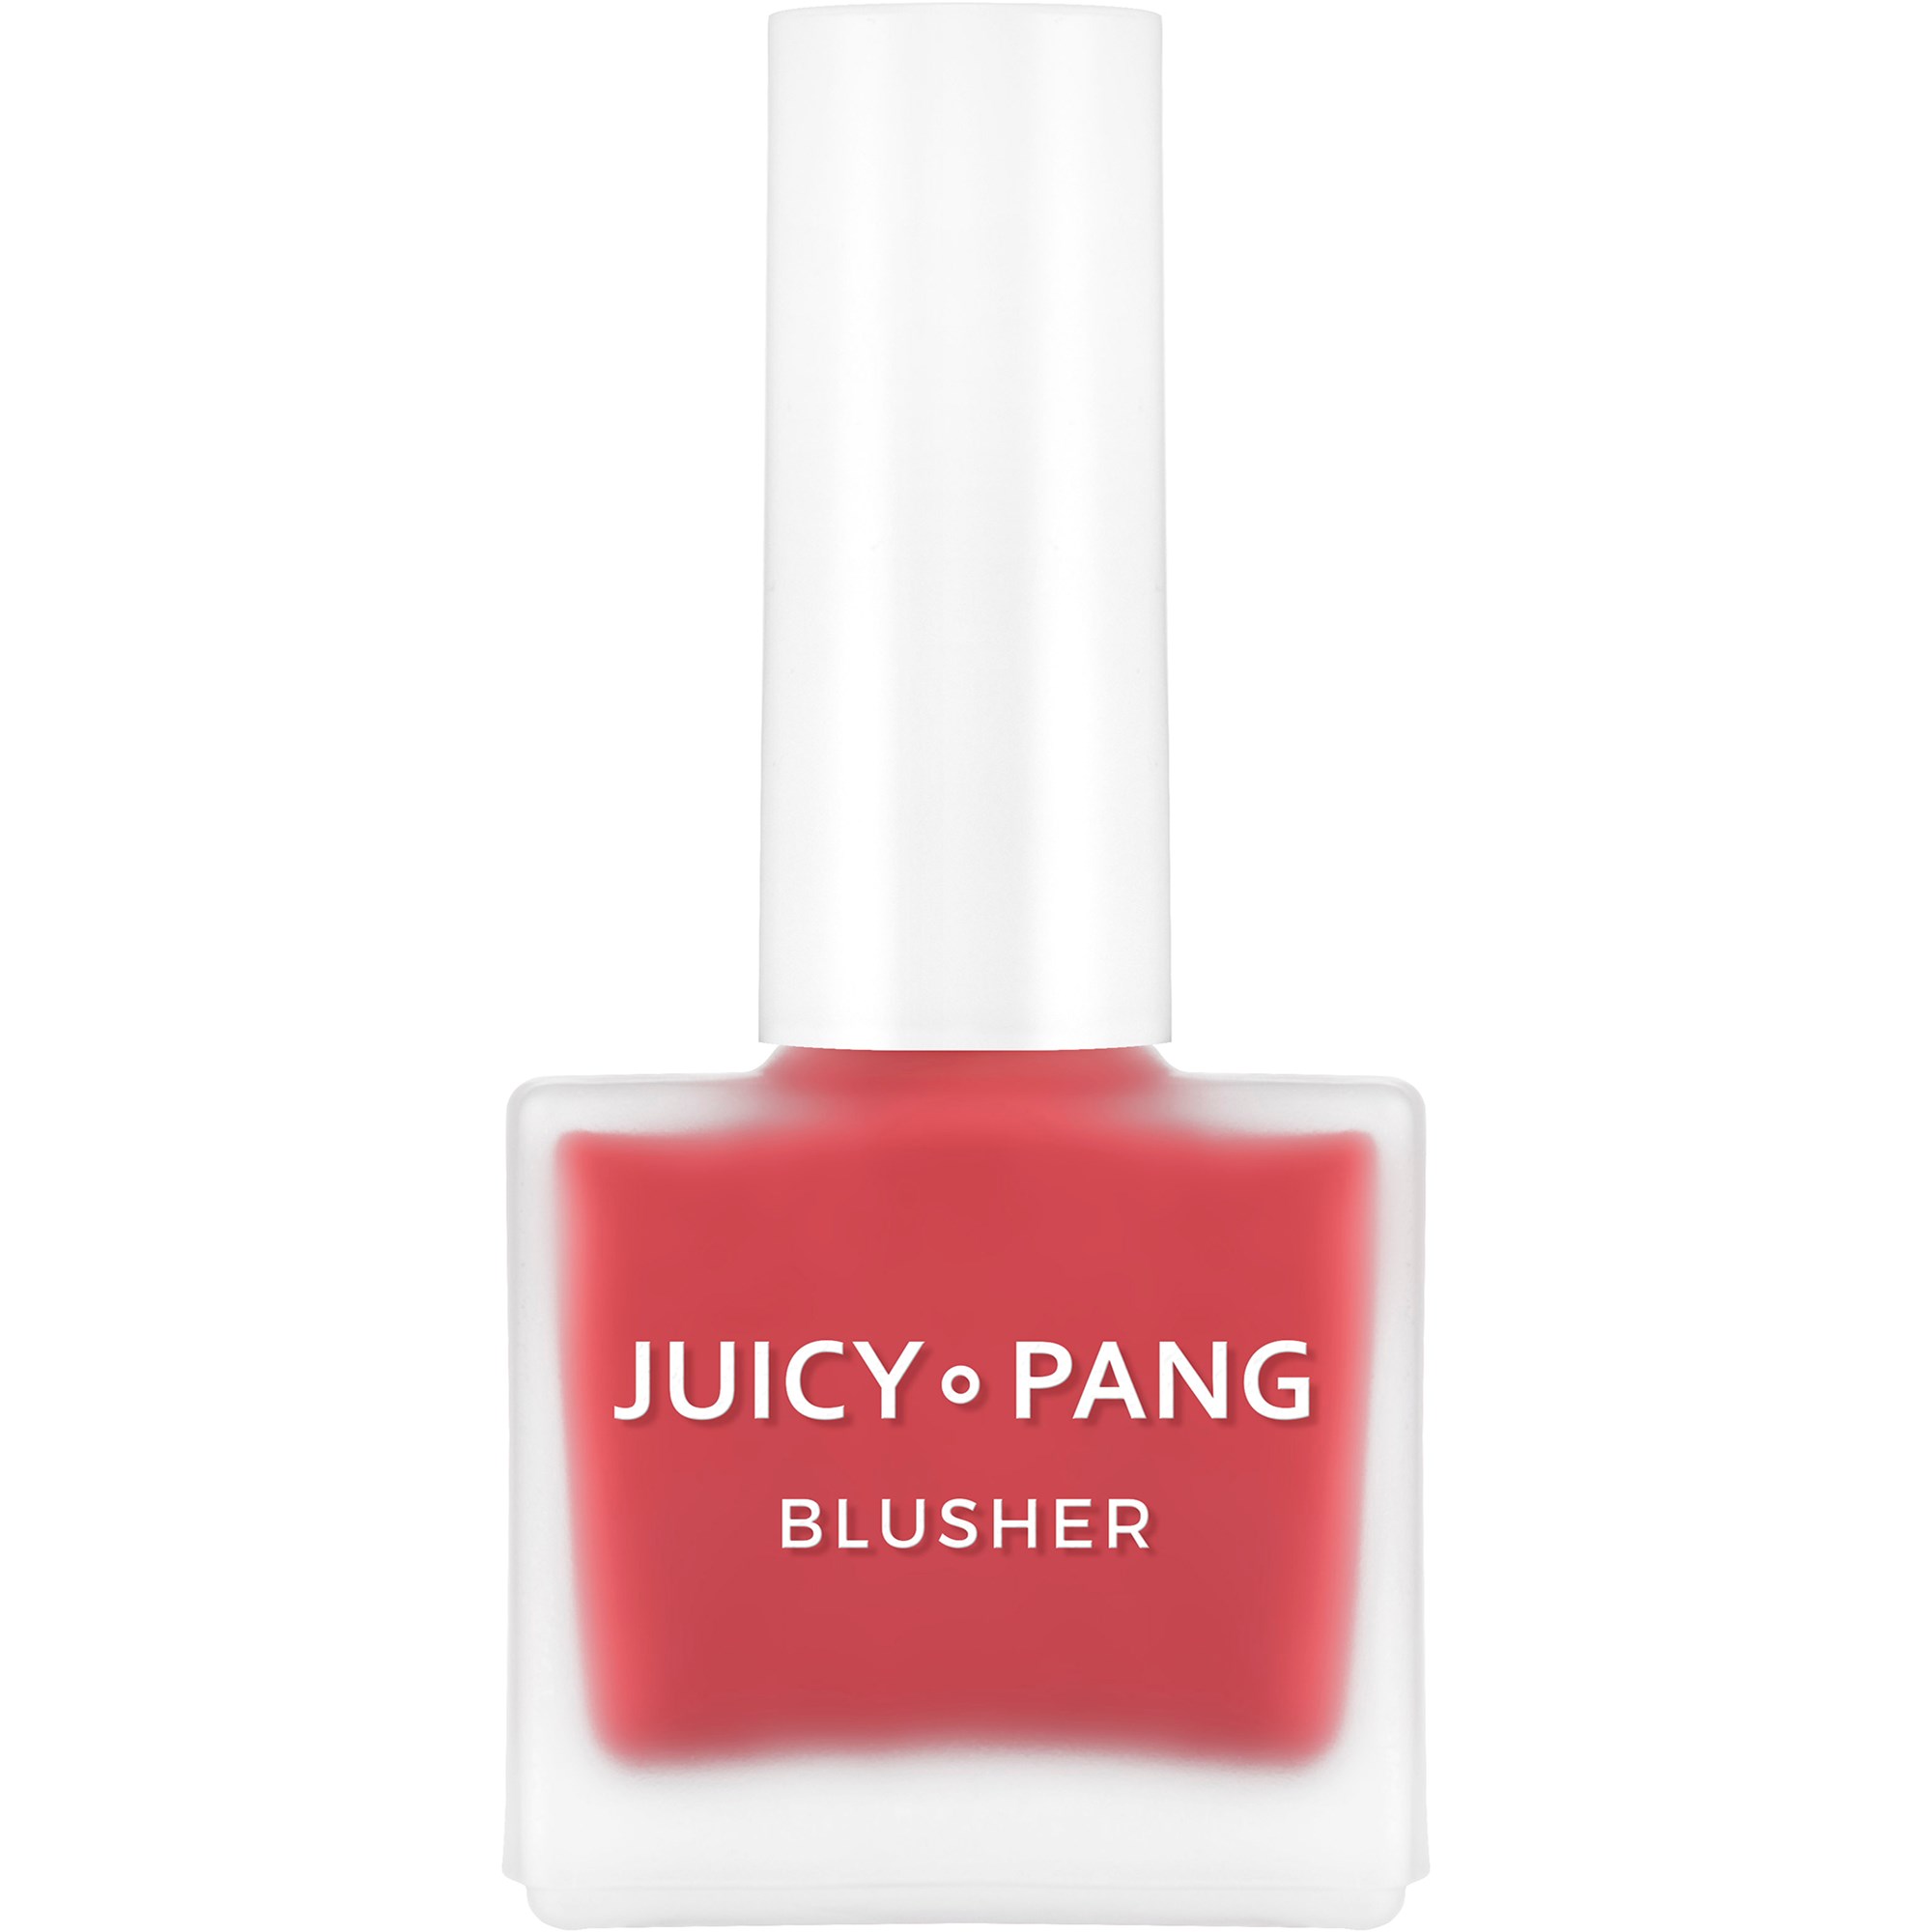 A'Pieu Juicy-Pang Water Blusher Rd01